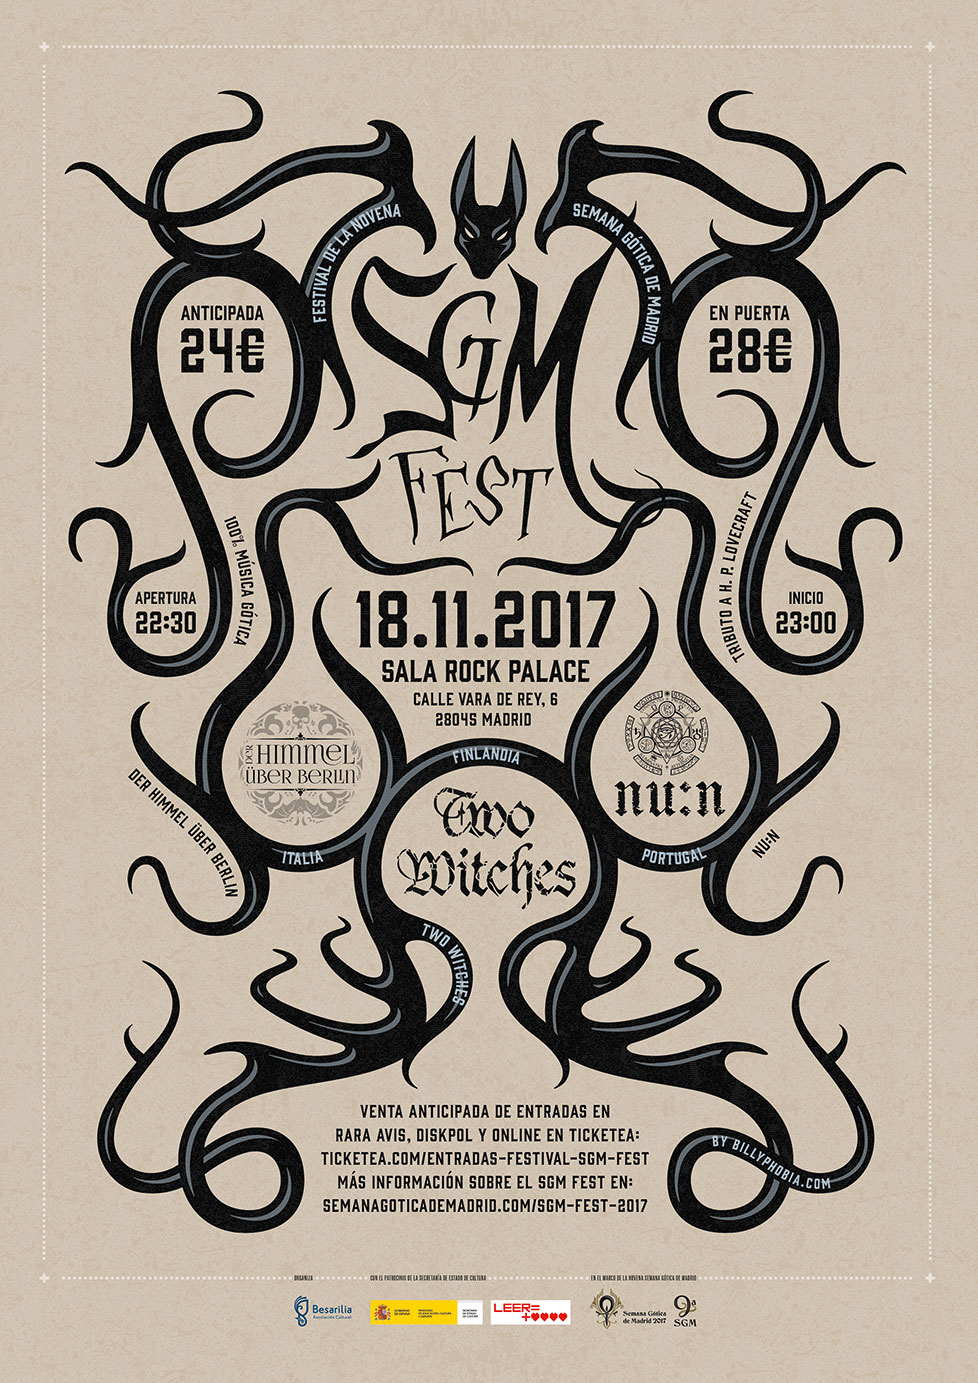 Semana Gótica de Madrid Festival (SGM FEST) 2017 Poster - Design & illustration by Billyphobia.com © 2017